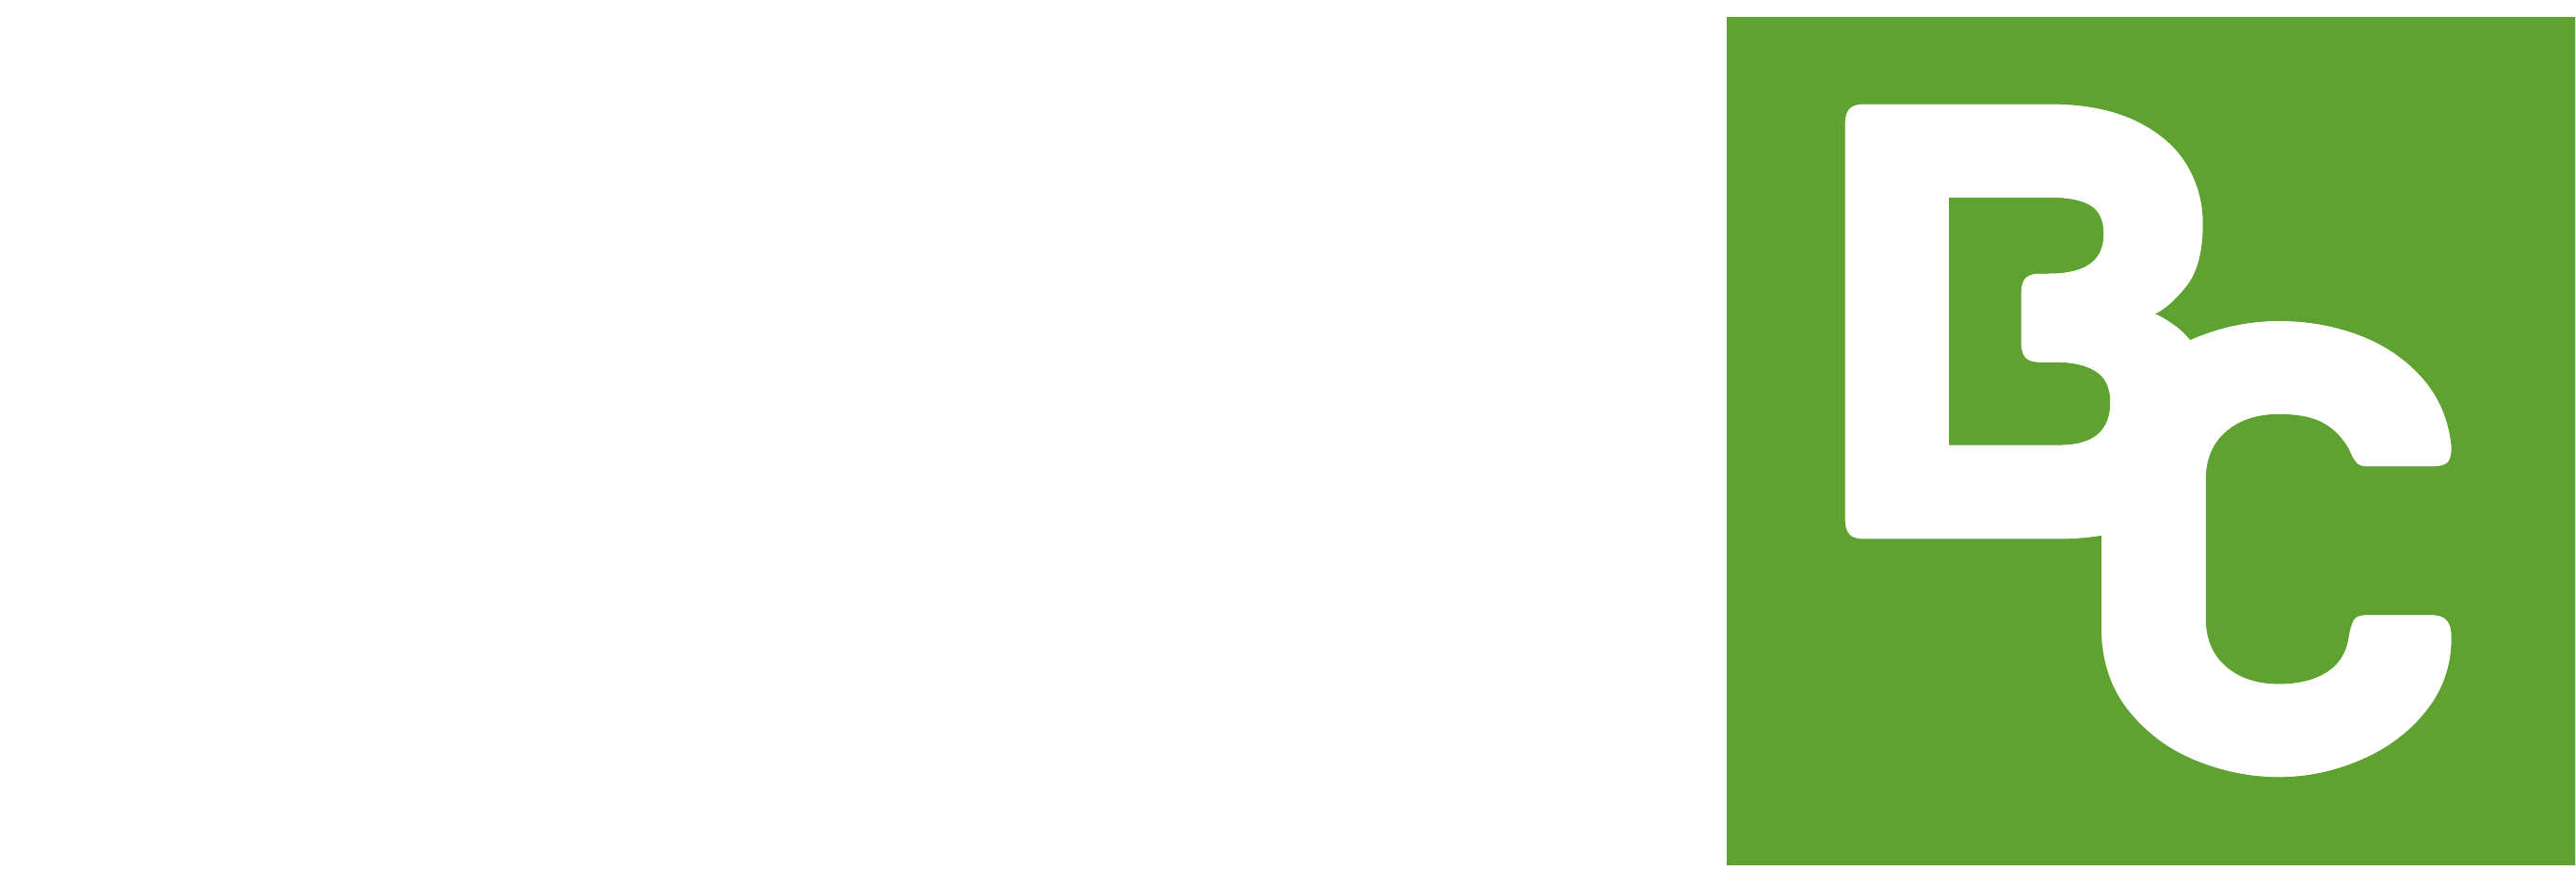 Basecommunity